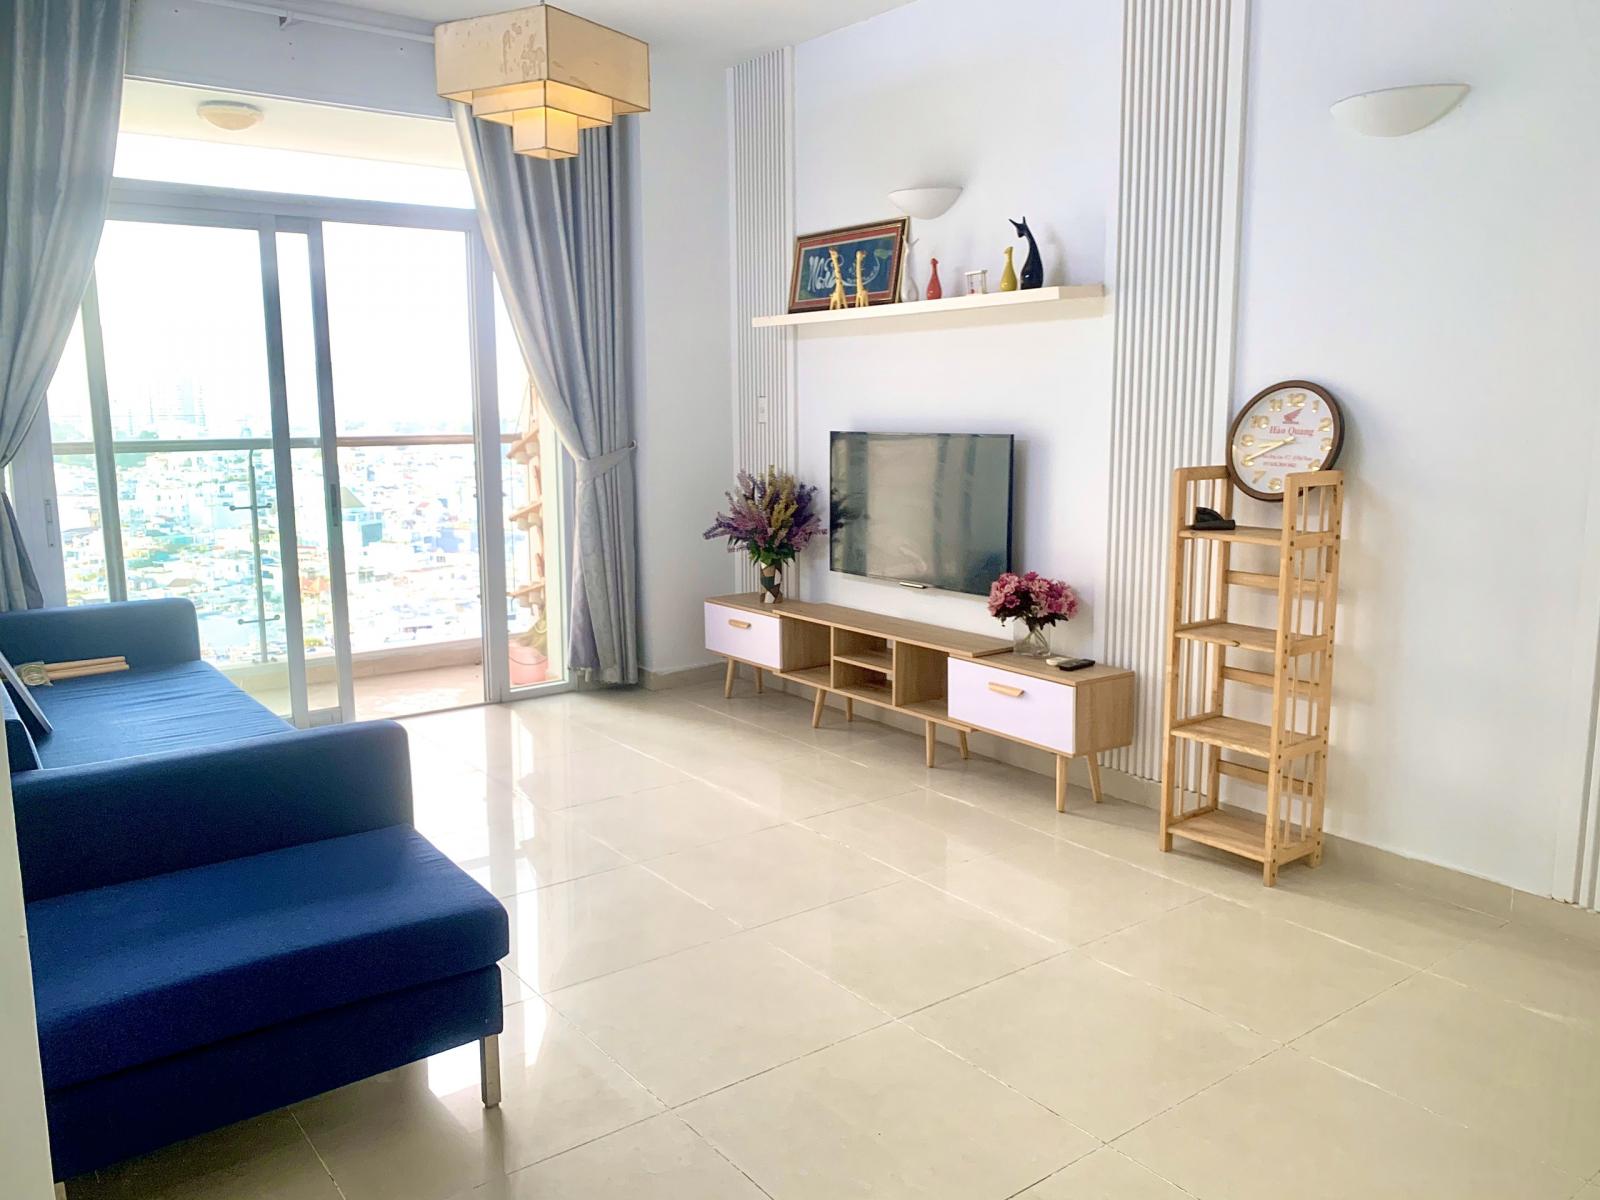 Cho thuê căn hộ Satra Eximland Quận Phú Nhuận- 2 phòng ngủ giá 14 triệu - 0908879243 Tuấn